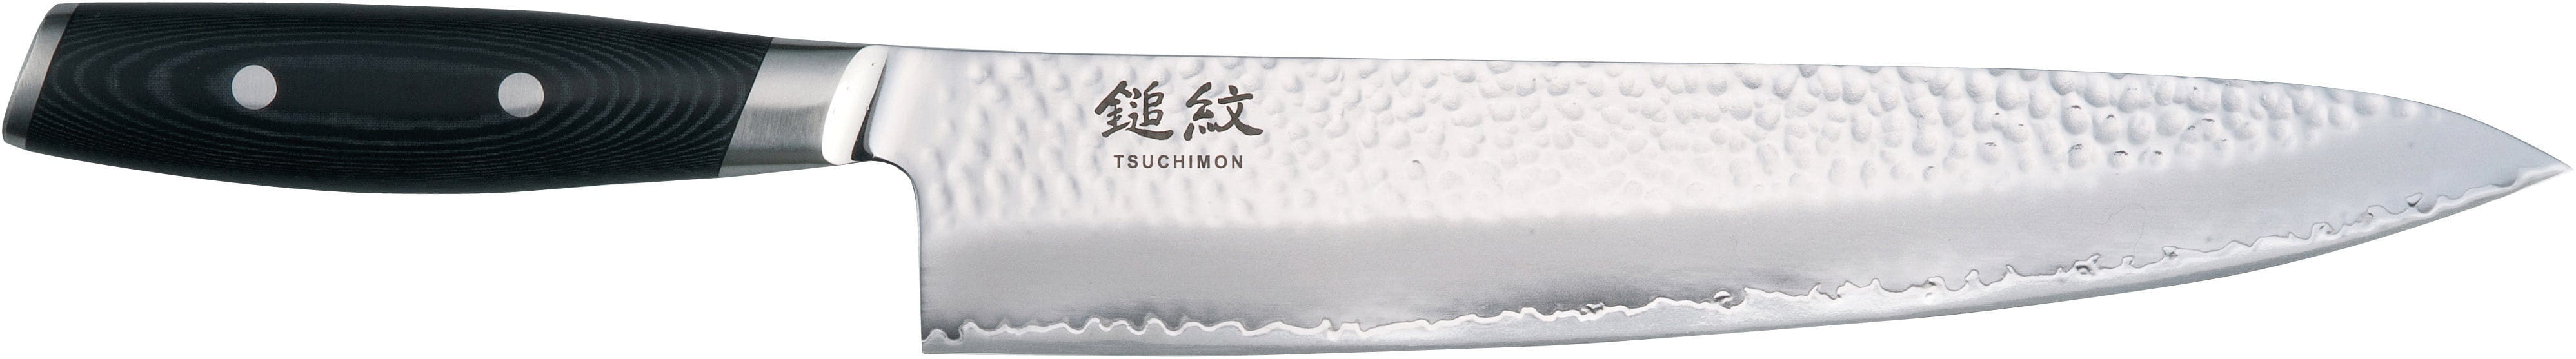 Cuchillo de chef de yaxell tsuchimon, 25,5 cm